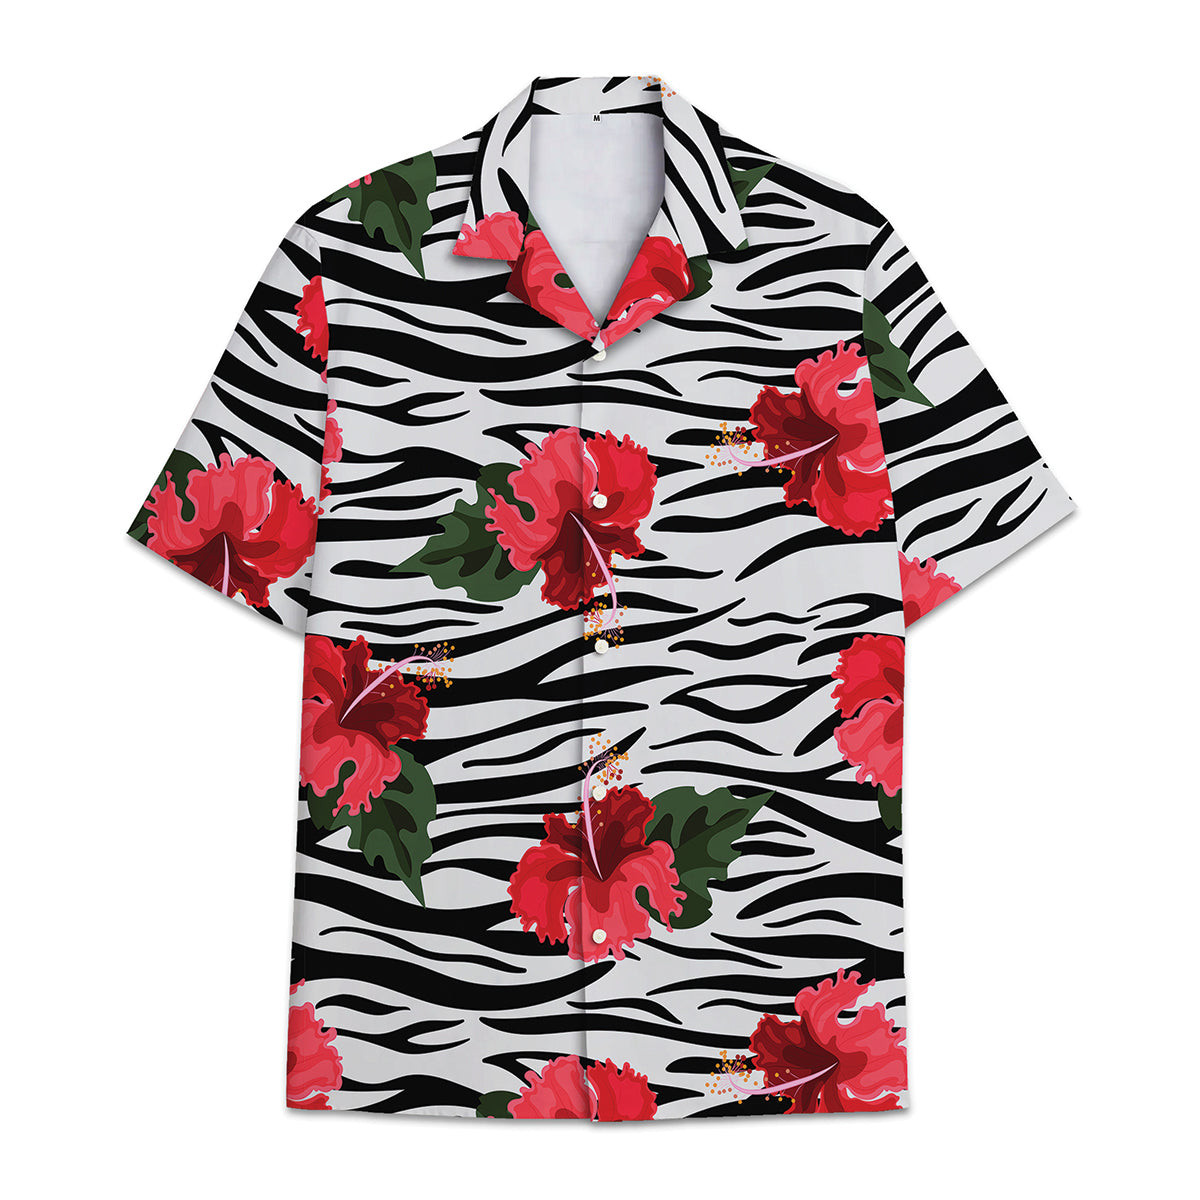 Hawaiian Shirt Zebra - Aloha Shirt Zebra Tropical Flower And Leaf Tropical Combined With Animal